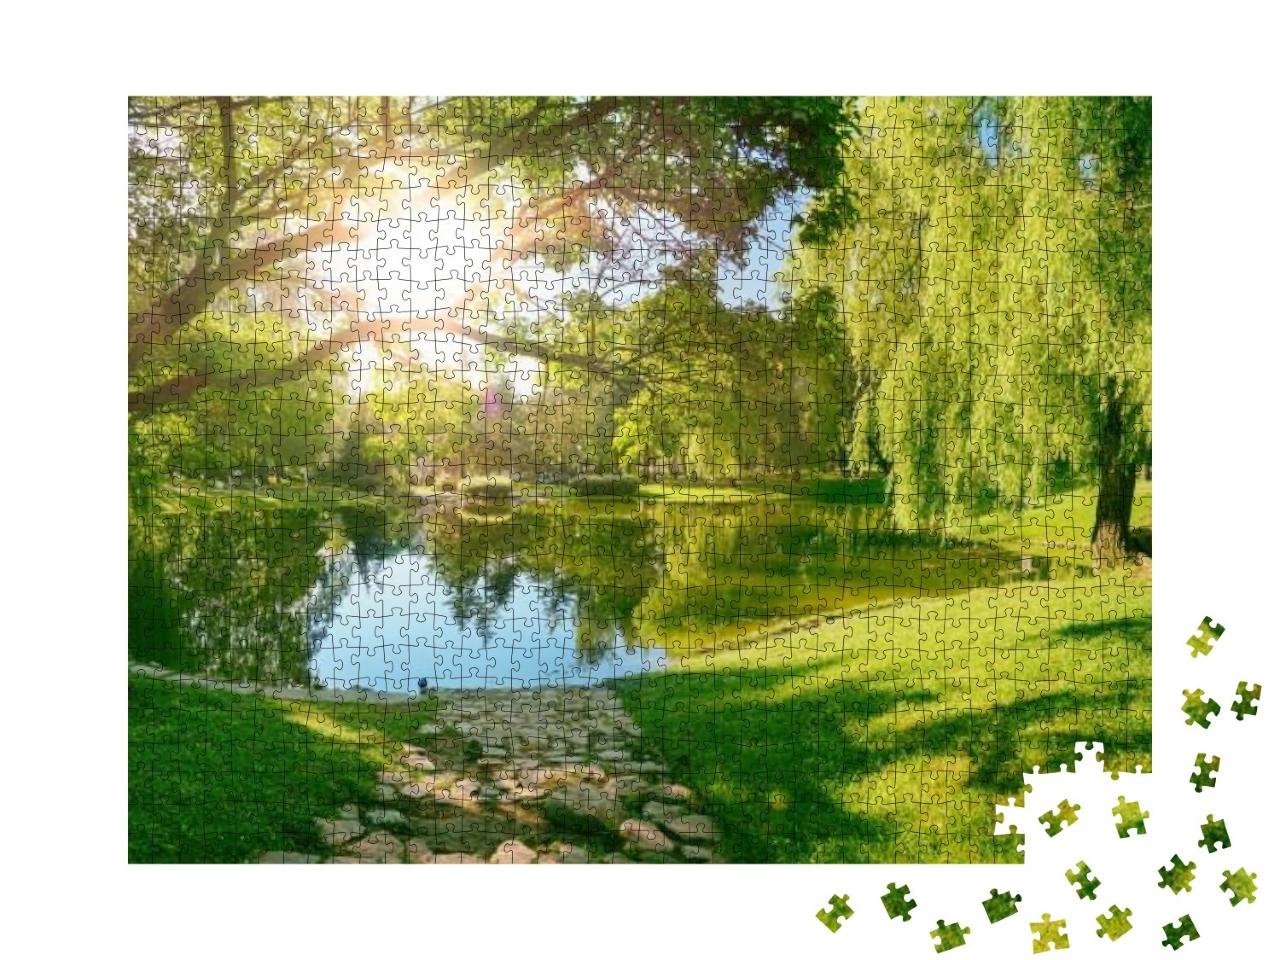 Puzzle 1000 Teile „Frühlingstag im Park“